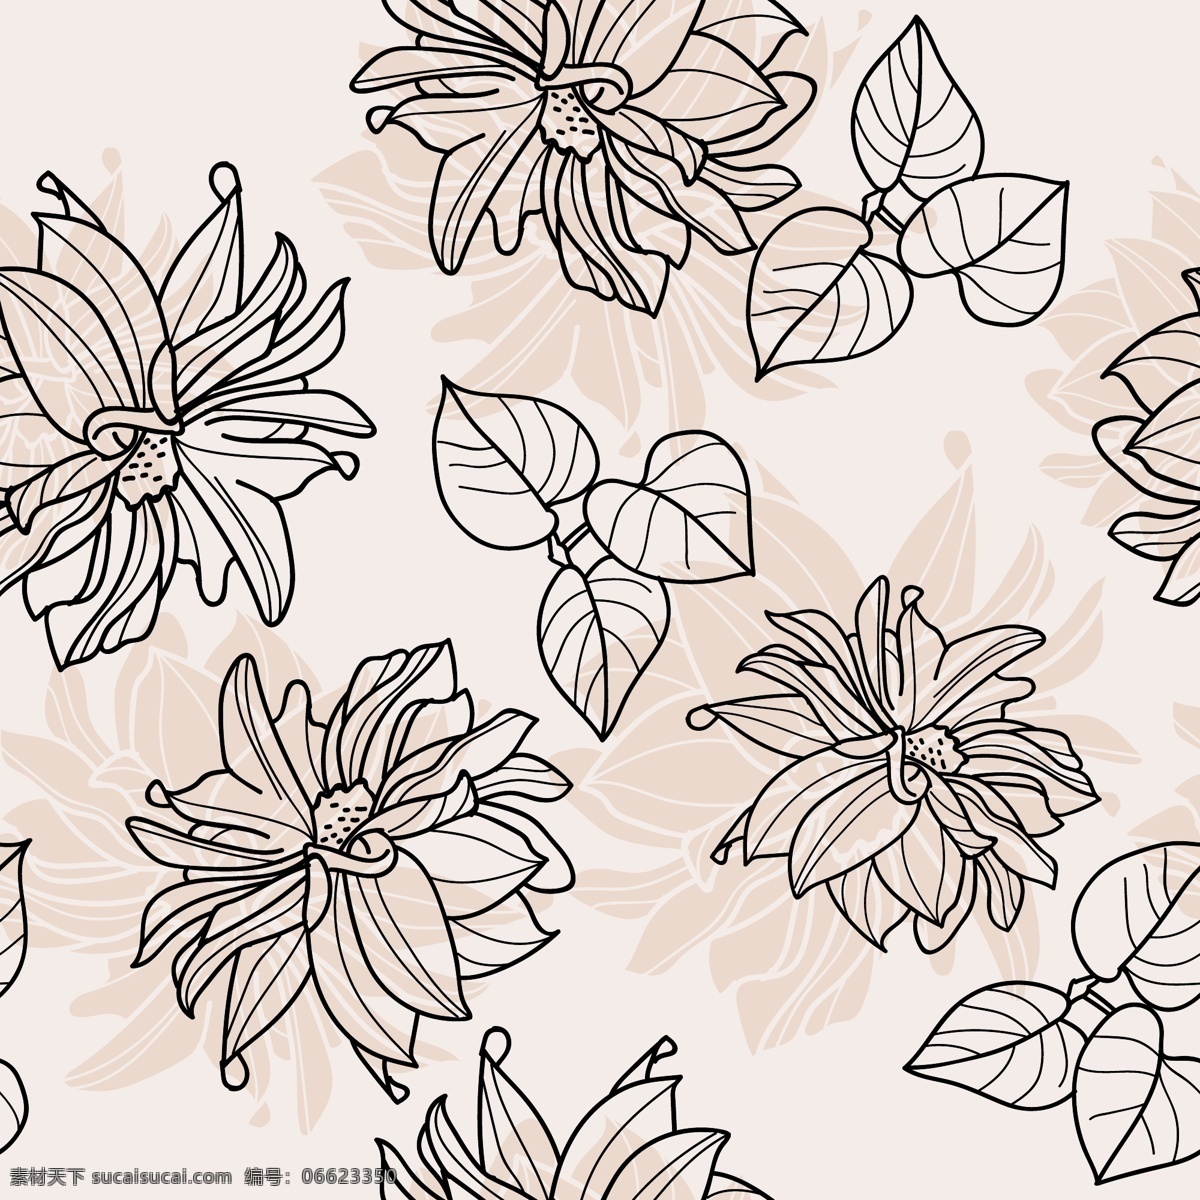 粉色 手绘 花朵 树叶 背景 矢量 黑色 花纹 简笔 平面素材 设计素材 矢量素材 植物